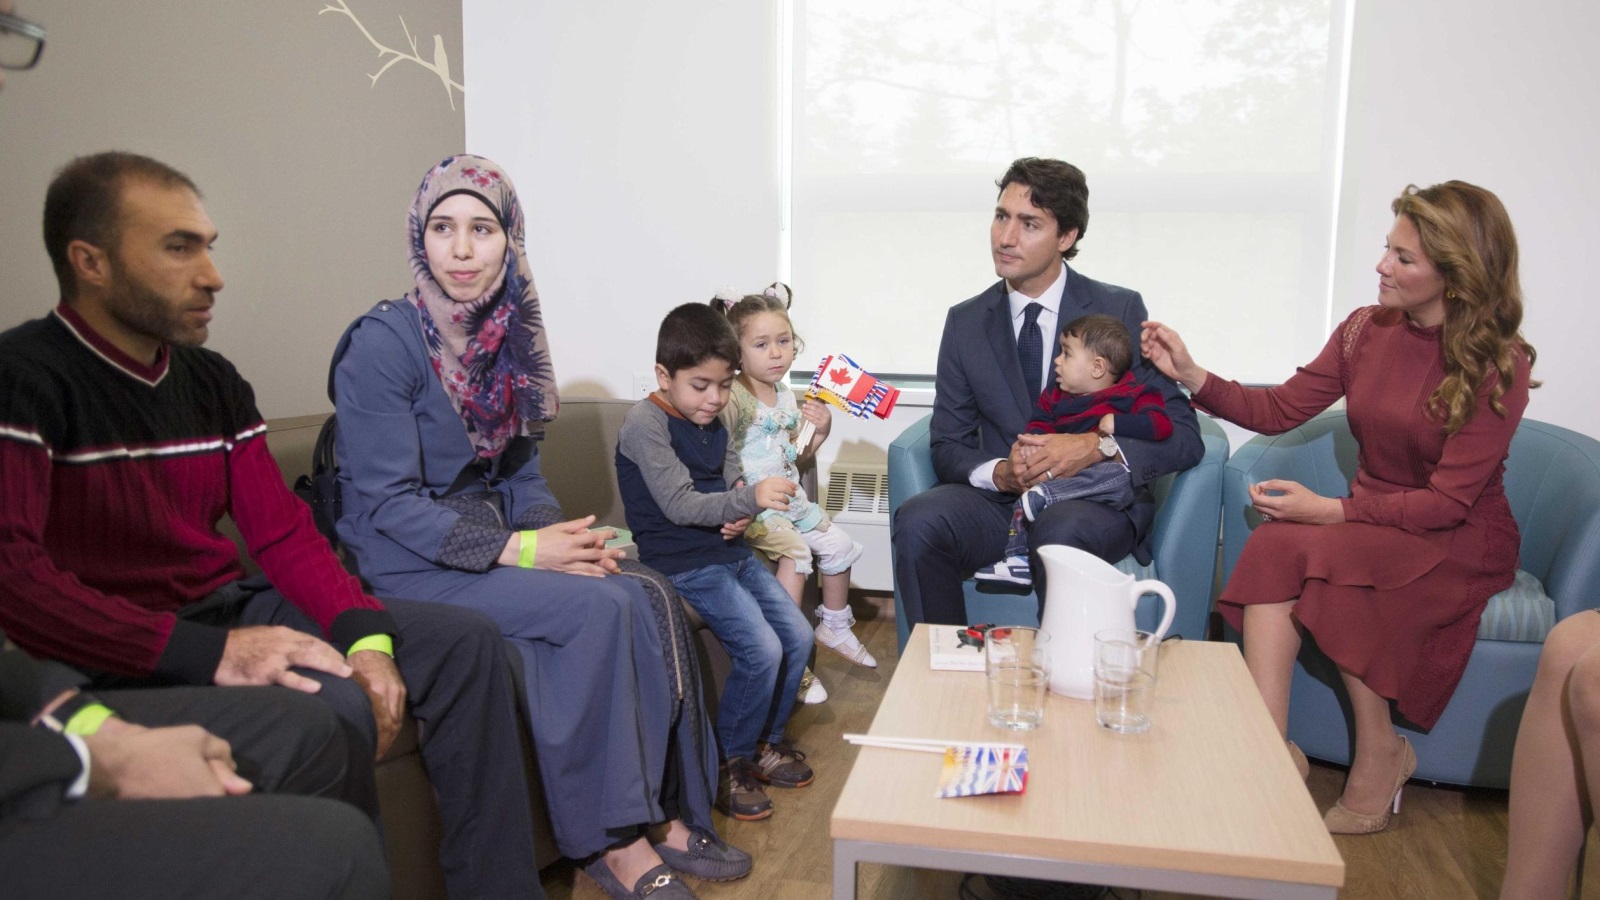 ‪رئيس وزراء كندا جاستين ترودو وزوجته يستقبلان عائلة سورية قادتها دروب النزوح إلى كندا (رويترز)‬ 
رئيس وزراء كندا جاستين ترودو وزوجته يستقبلان عائلة سورية قادتها دروب النزوح إلى كندا (رويترز)
